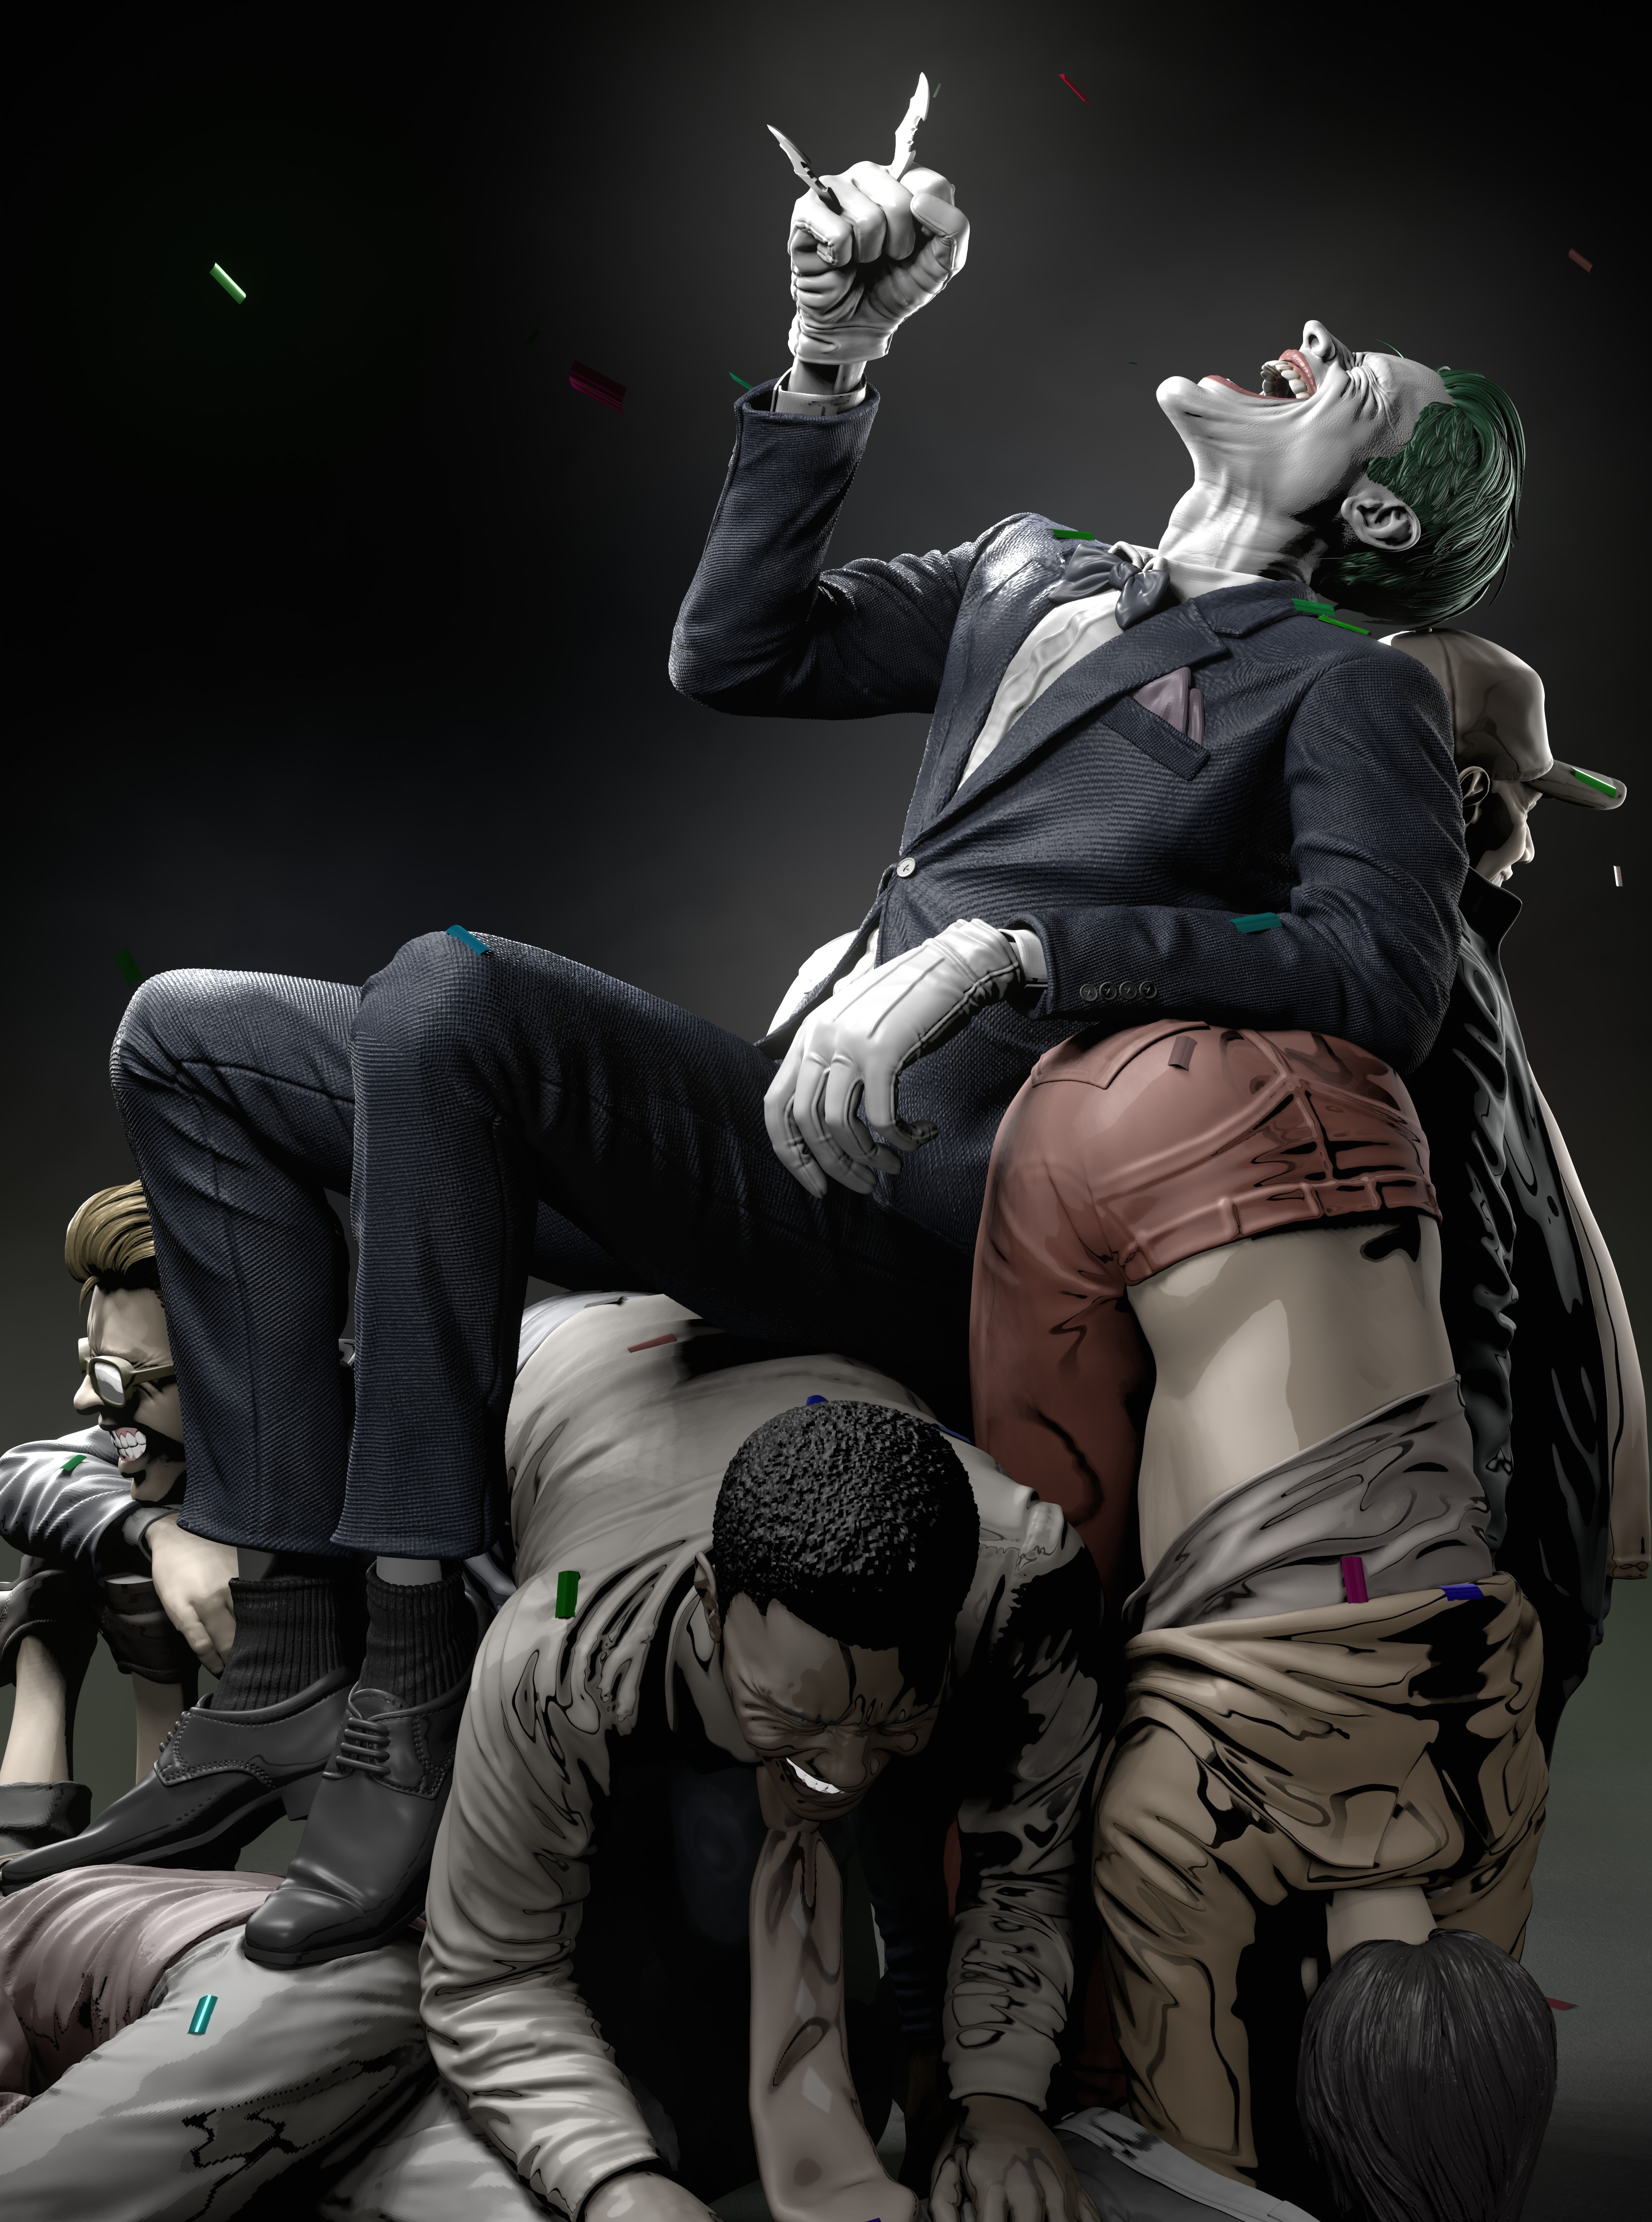 Artwork Digital Art Joker Villains Laughing Suffering DC Comics 3390x4560